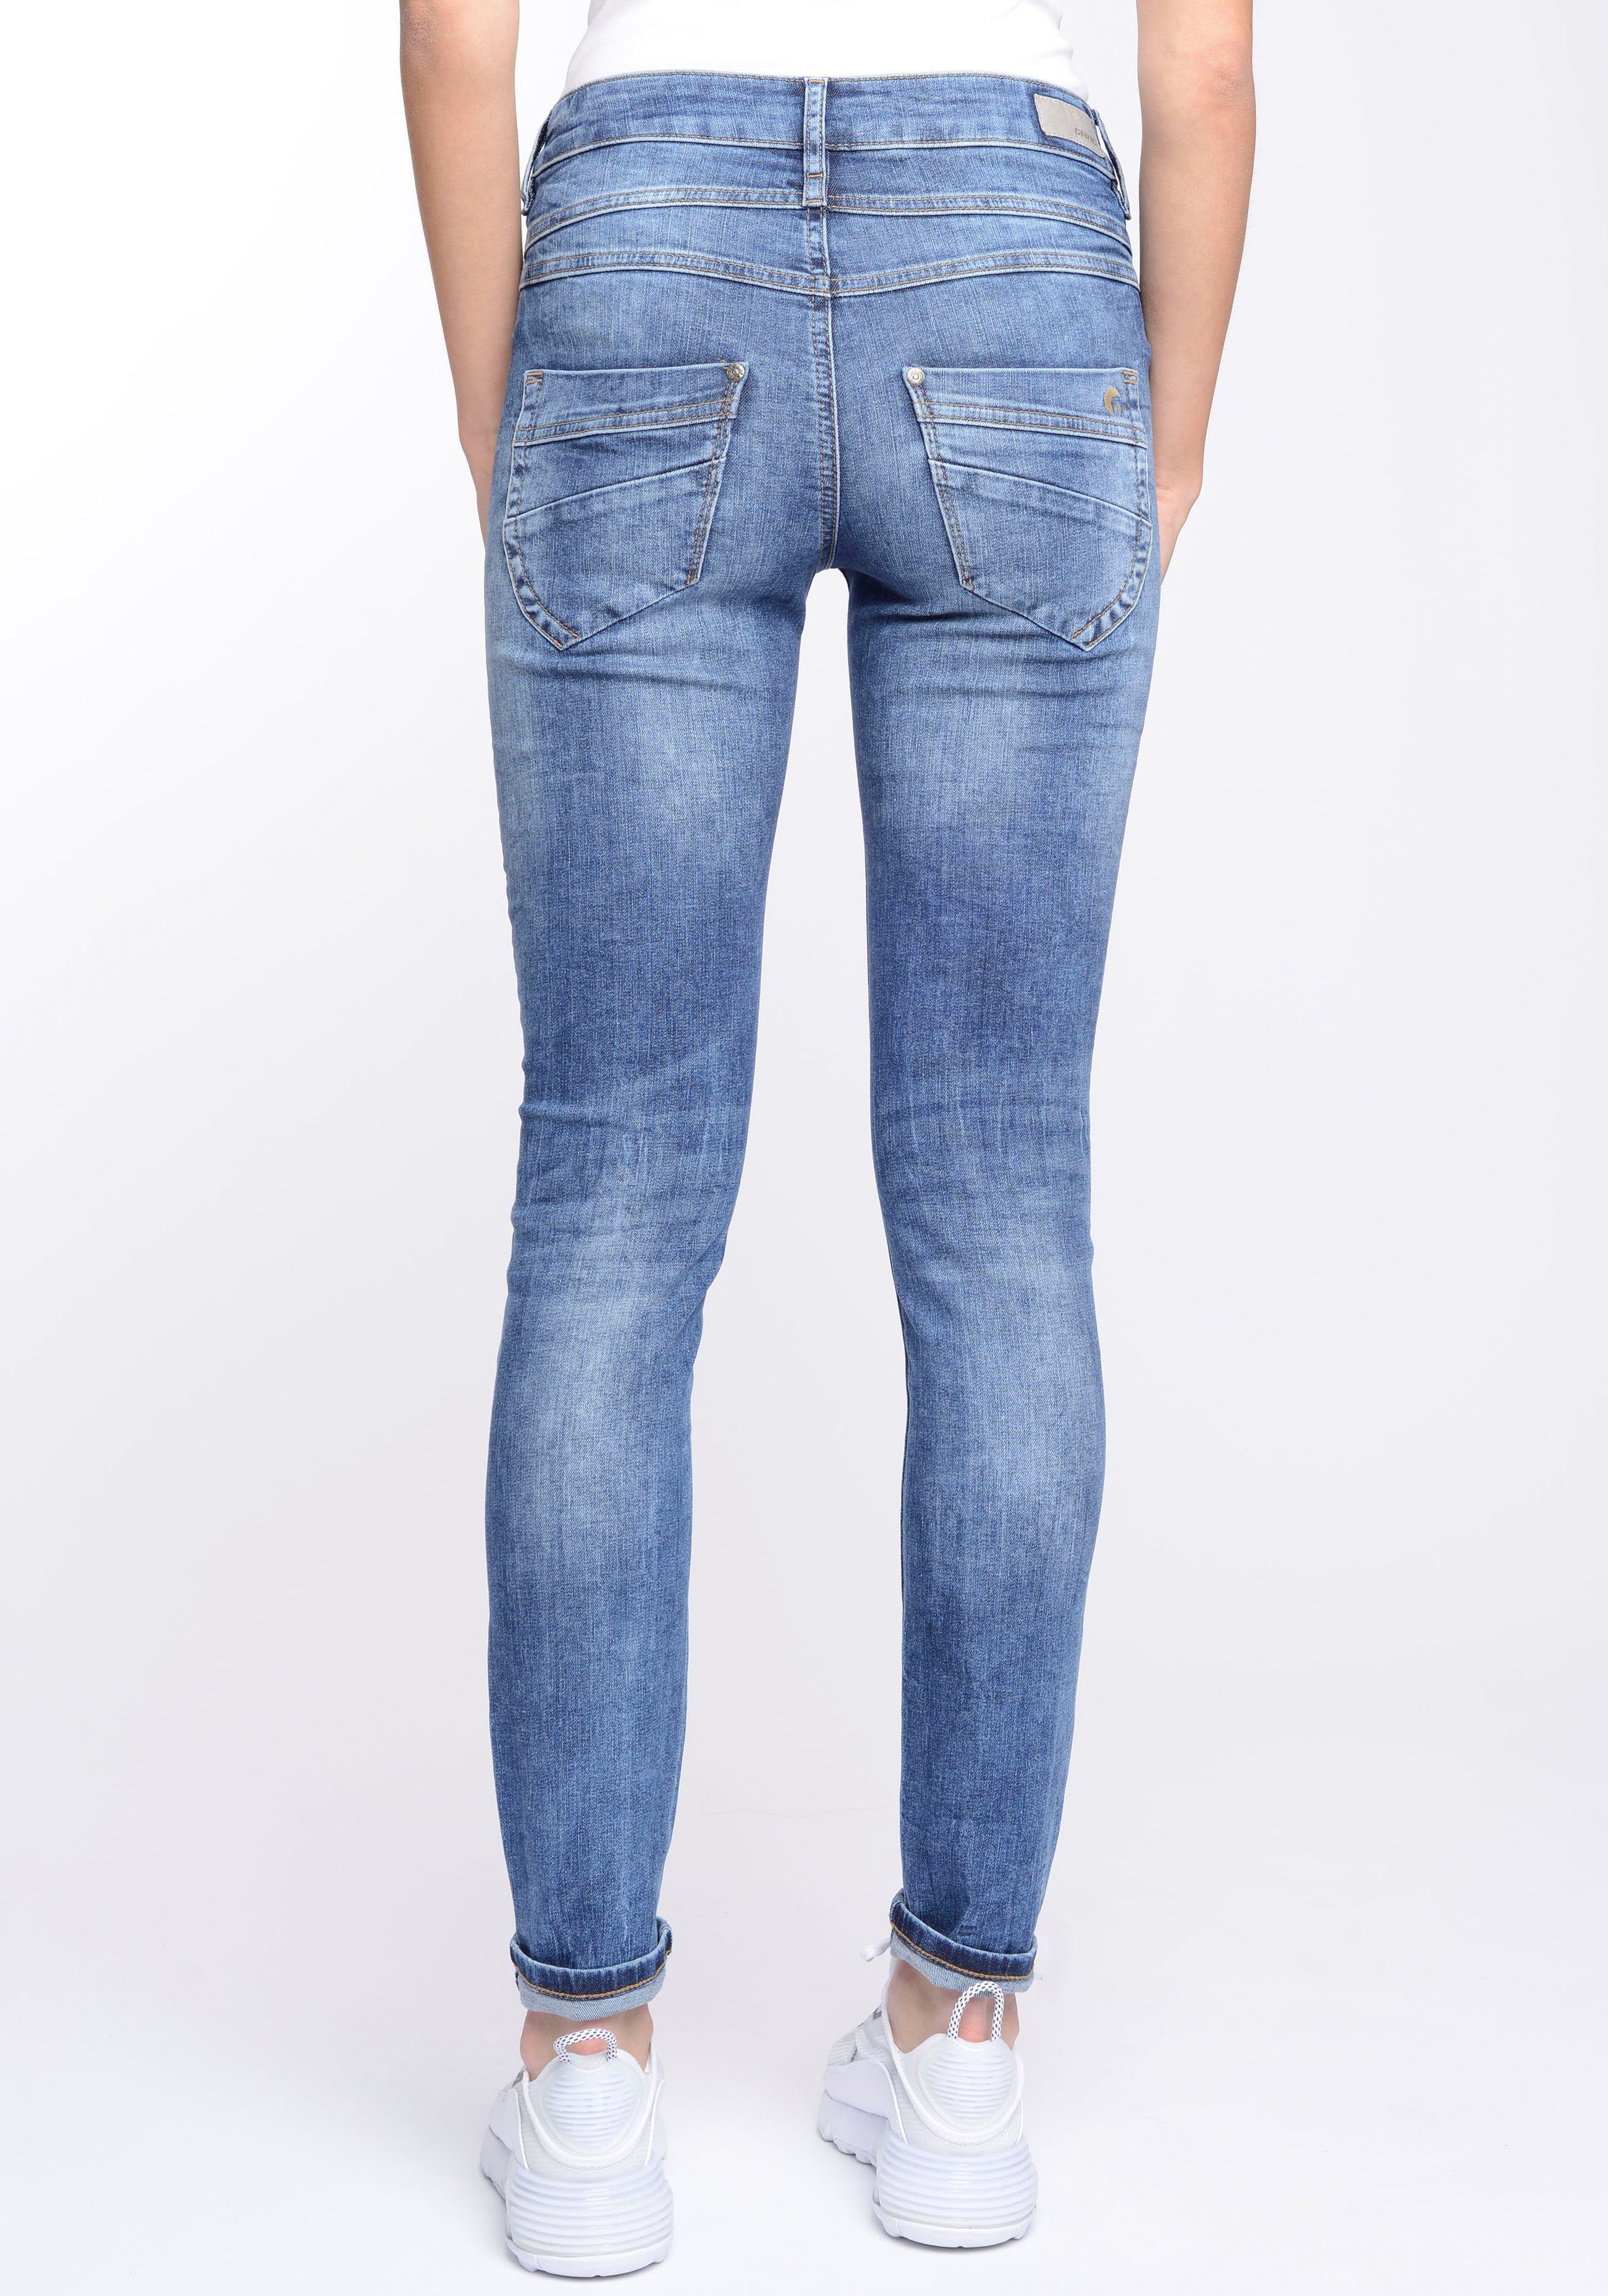 Passe blue) 94MORA mit Skinny-fit-Jeans Midblue 3-Knopf-Verschluss Wash vorne und (mid GANG